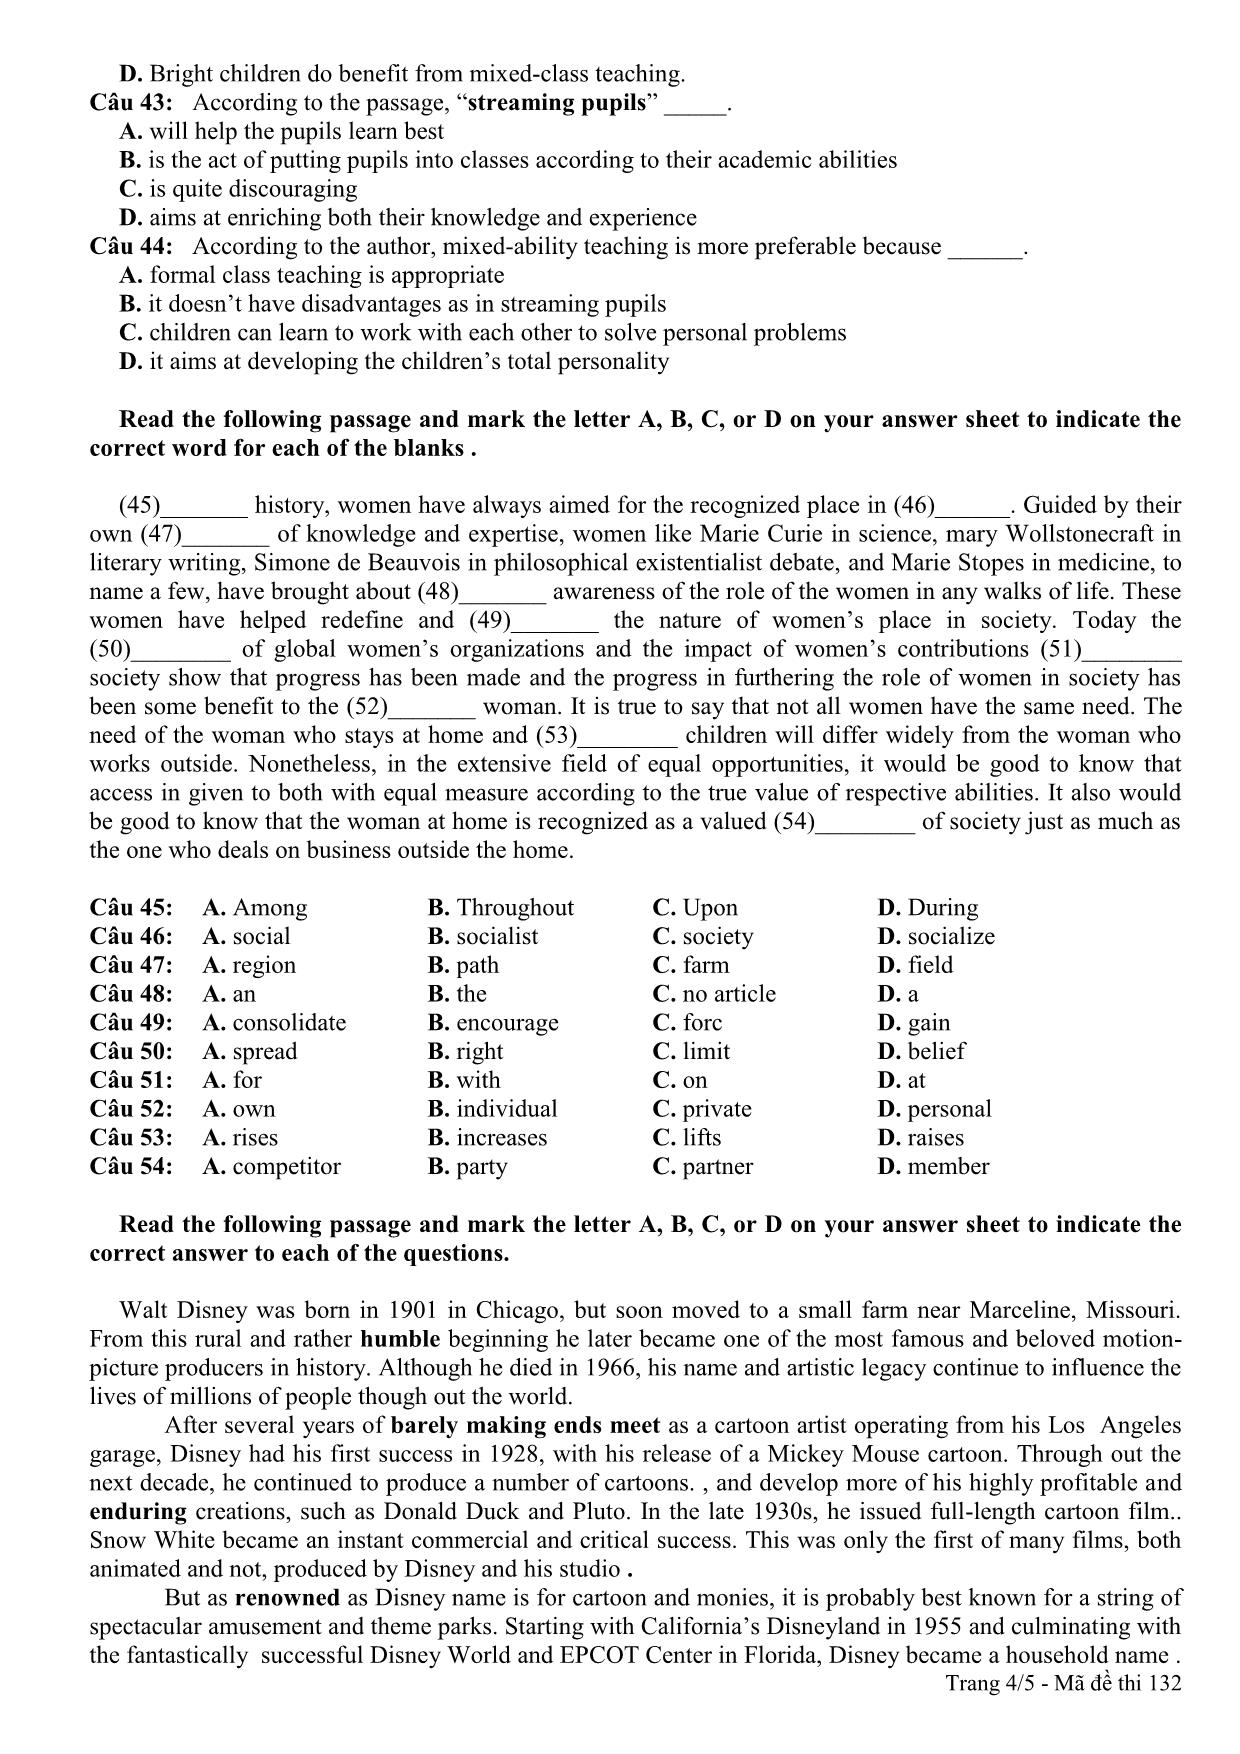 Đề thi thử THPT Quốc gia môn Tiếng Anh lần 3 - Mã đề 132 - Năm học 2014-2015 - Trường THPT Hàn Thuyên (Có đáp án) trang 4